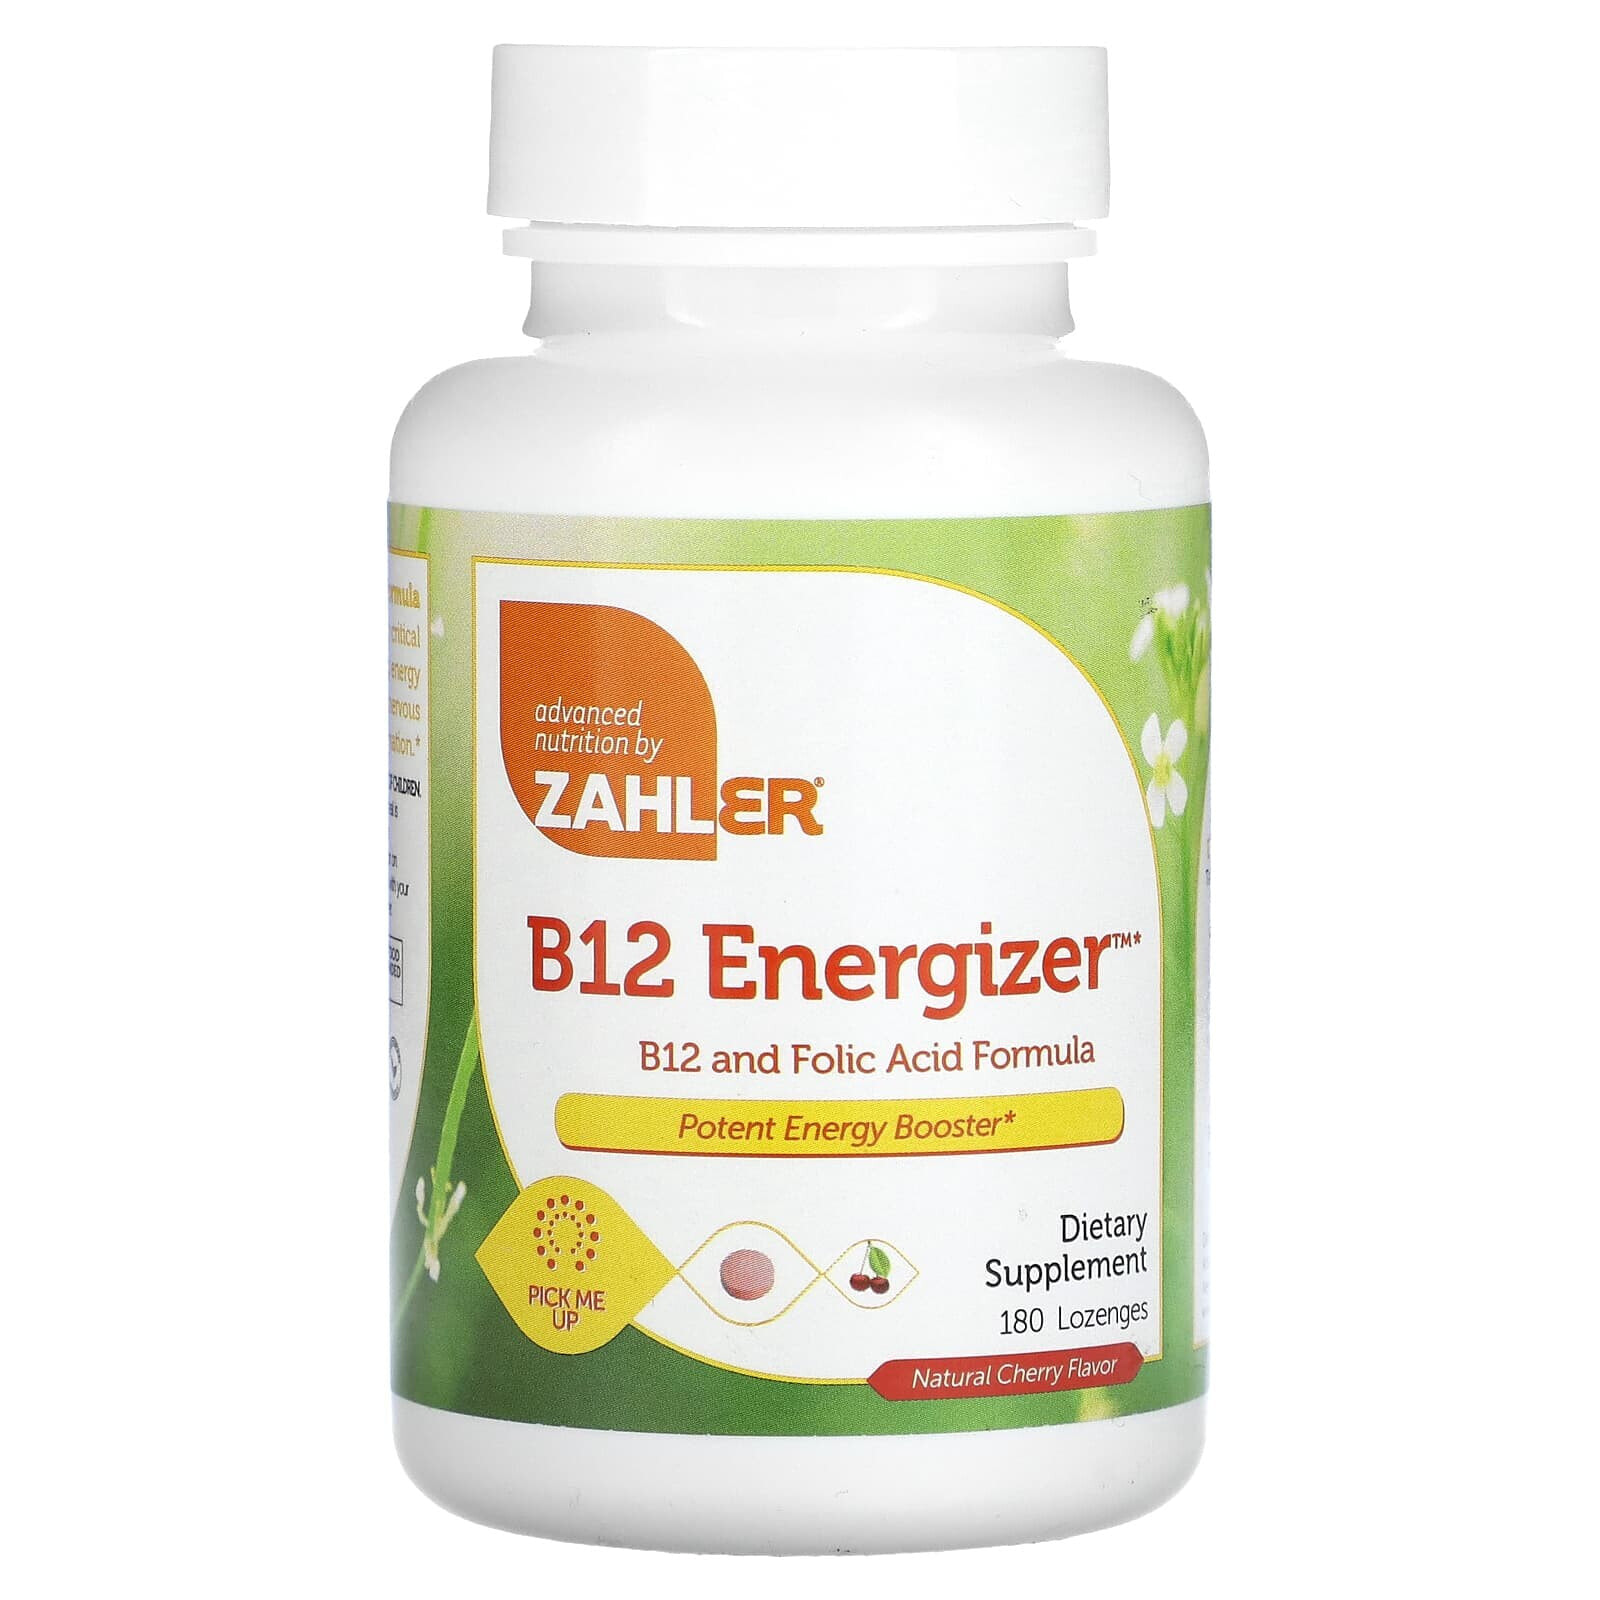 B12 Energizer, B12 and Folic Acid Formula, Natural Cherry, 180 Lozenges